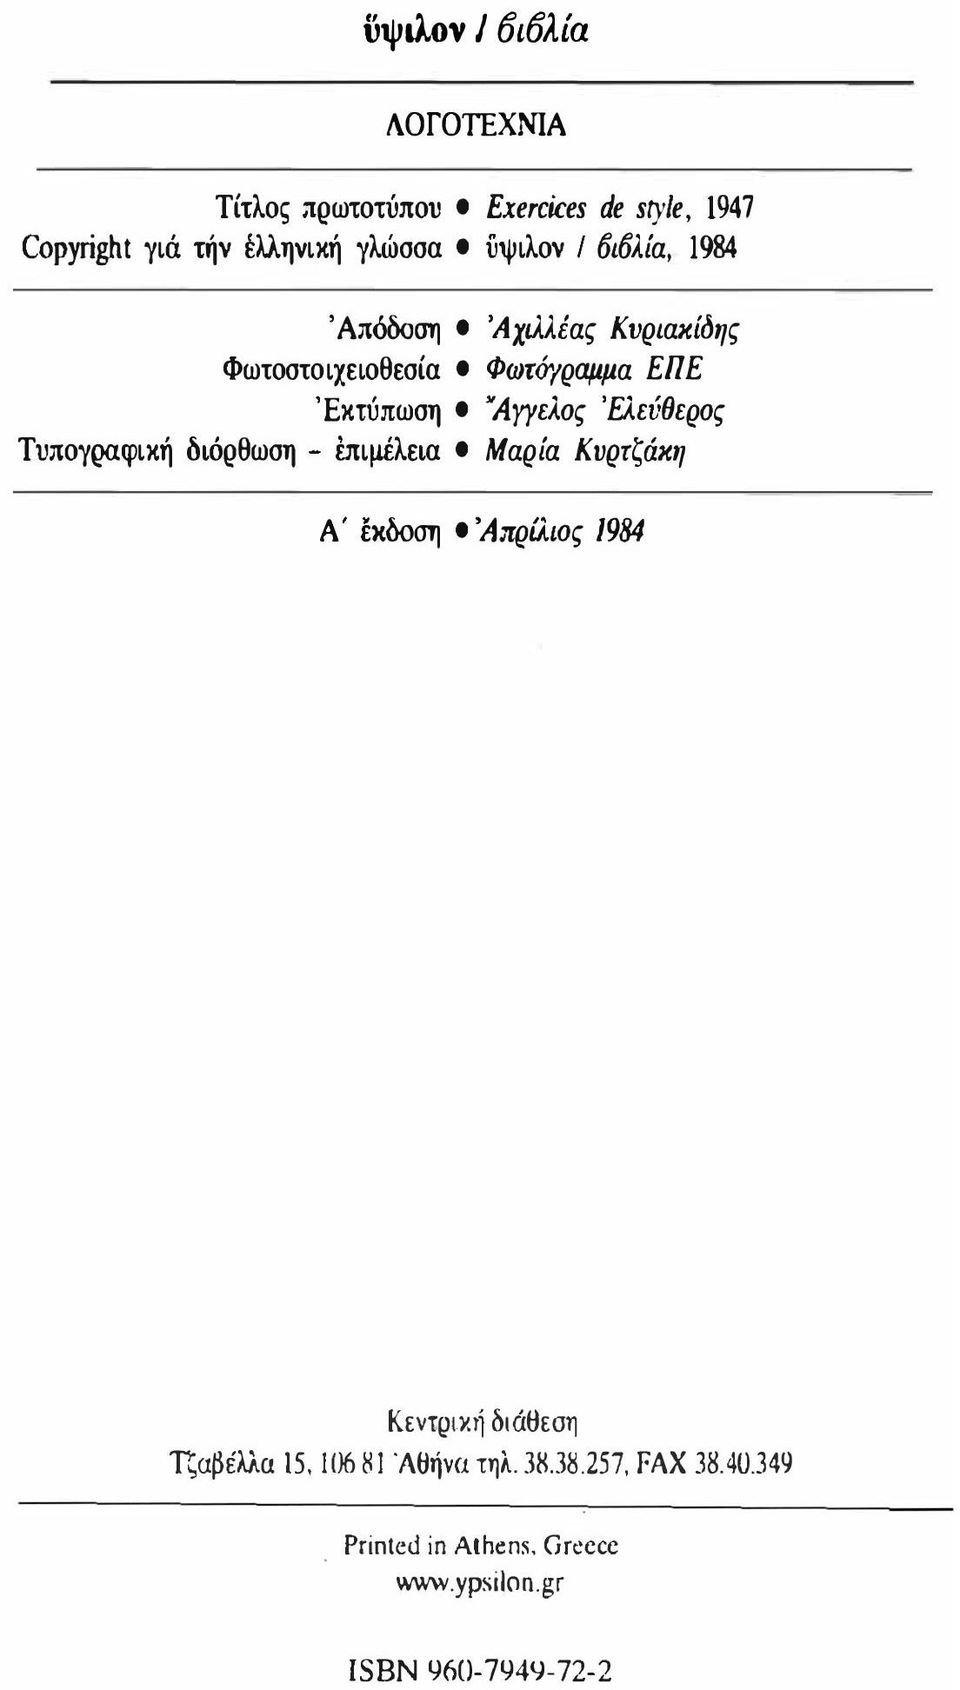 'Ελεύθερος Τυπογραφική διόρθωση - έπιμέλεια ι Μαρία Κυρτζάκη Α' έκδοση ι 'Απρίλιος 1984 Κεντριχι] διάt:ιεση